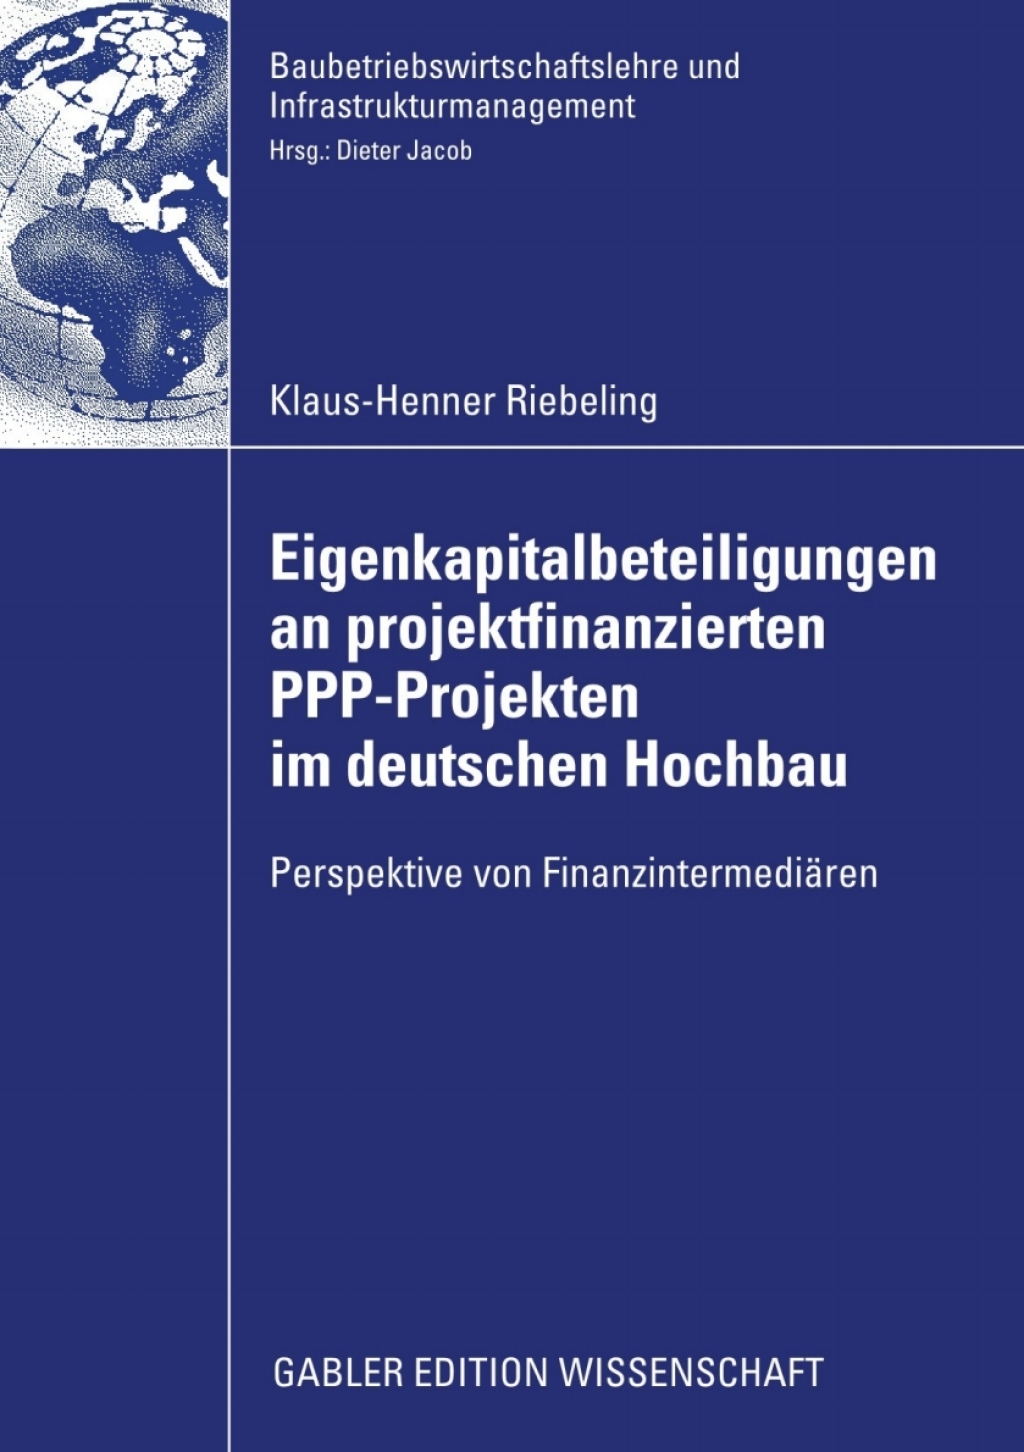 ISBN 9783834916013 product image for Eigenkapitalbeteiligungen an projektfinanzierten PPP-Projekten im deutschen Hoch | upcitemdb.com